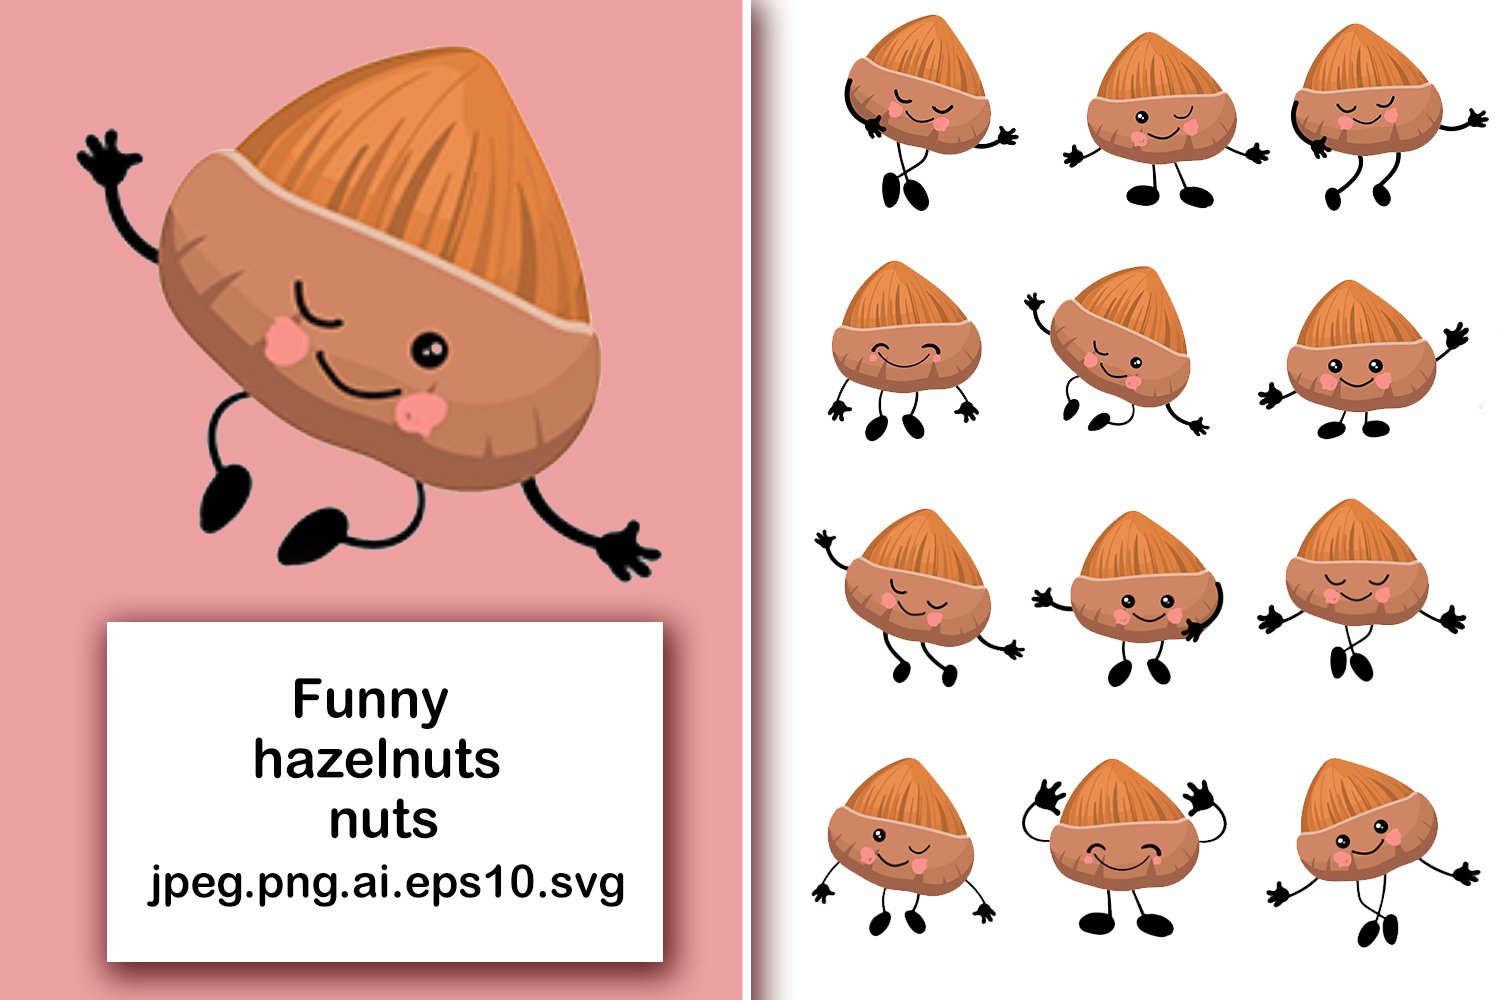 An illustration of a hazelnut on a pink background and a set of 12 hazelnuts on a white background.